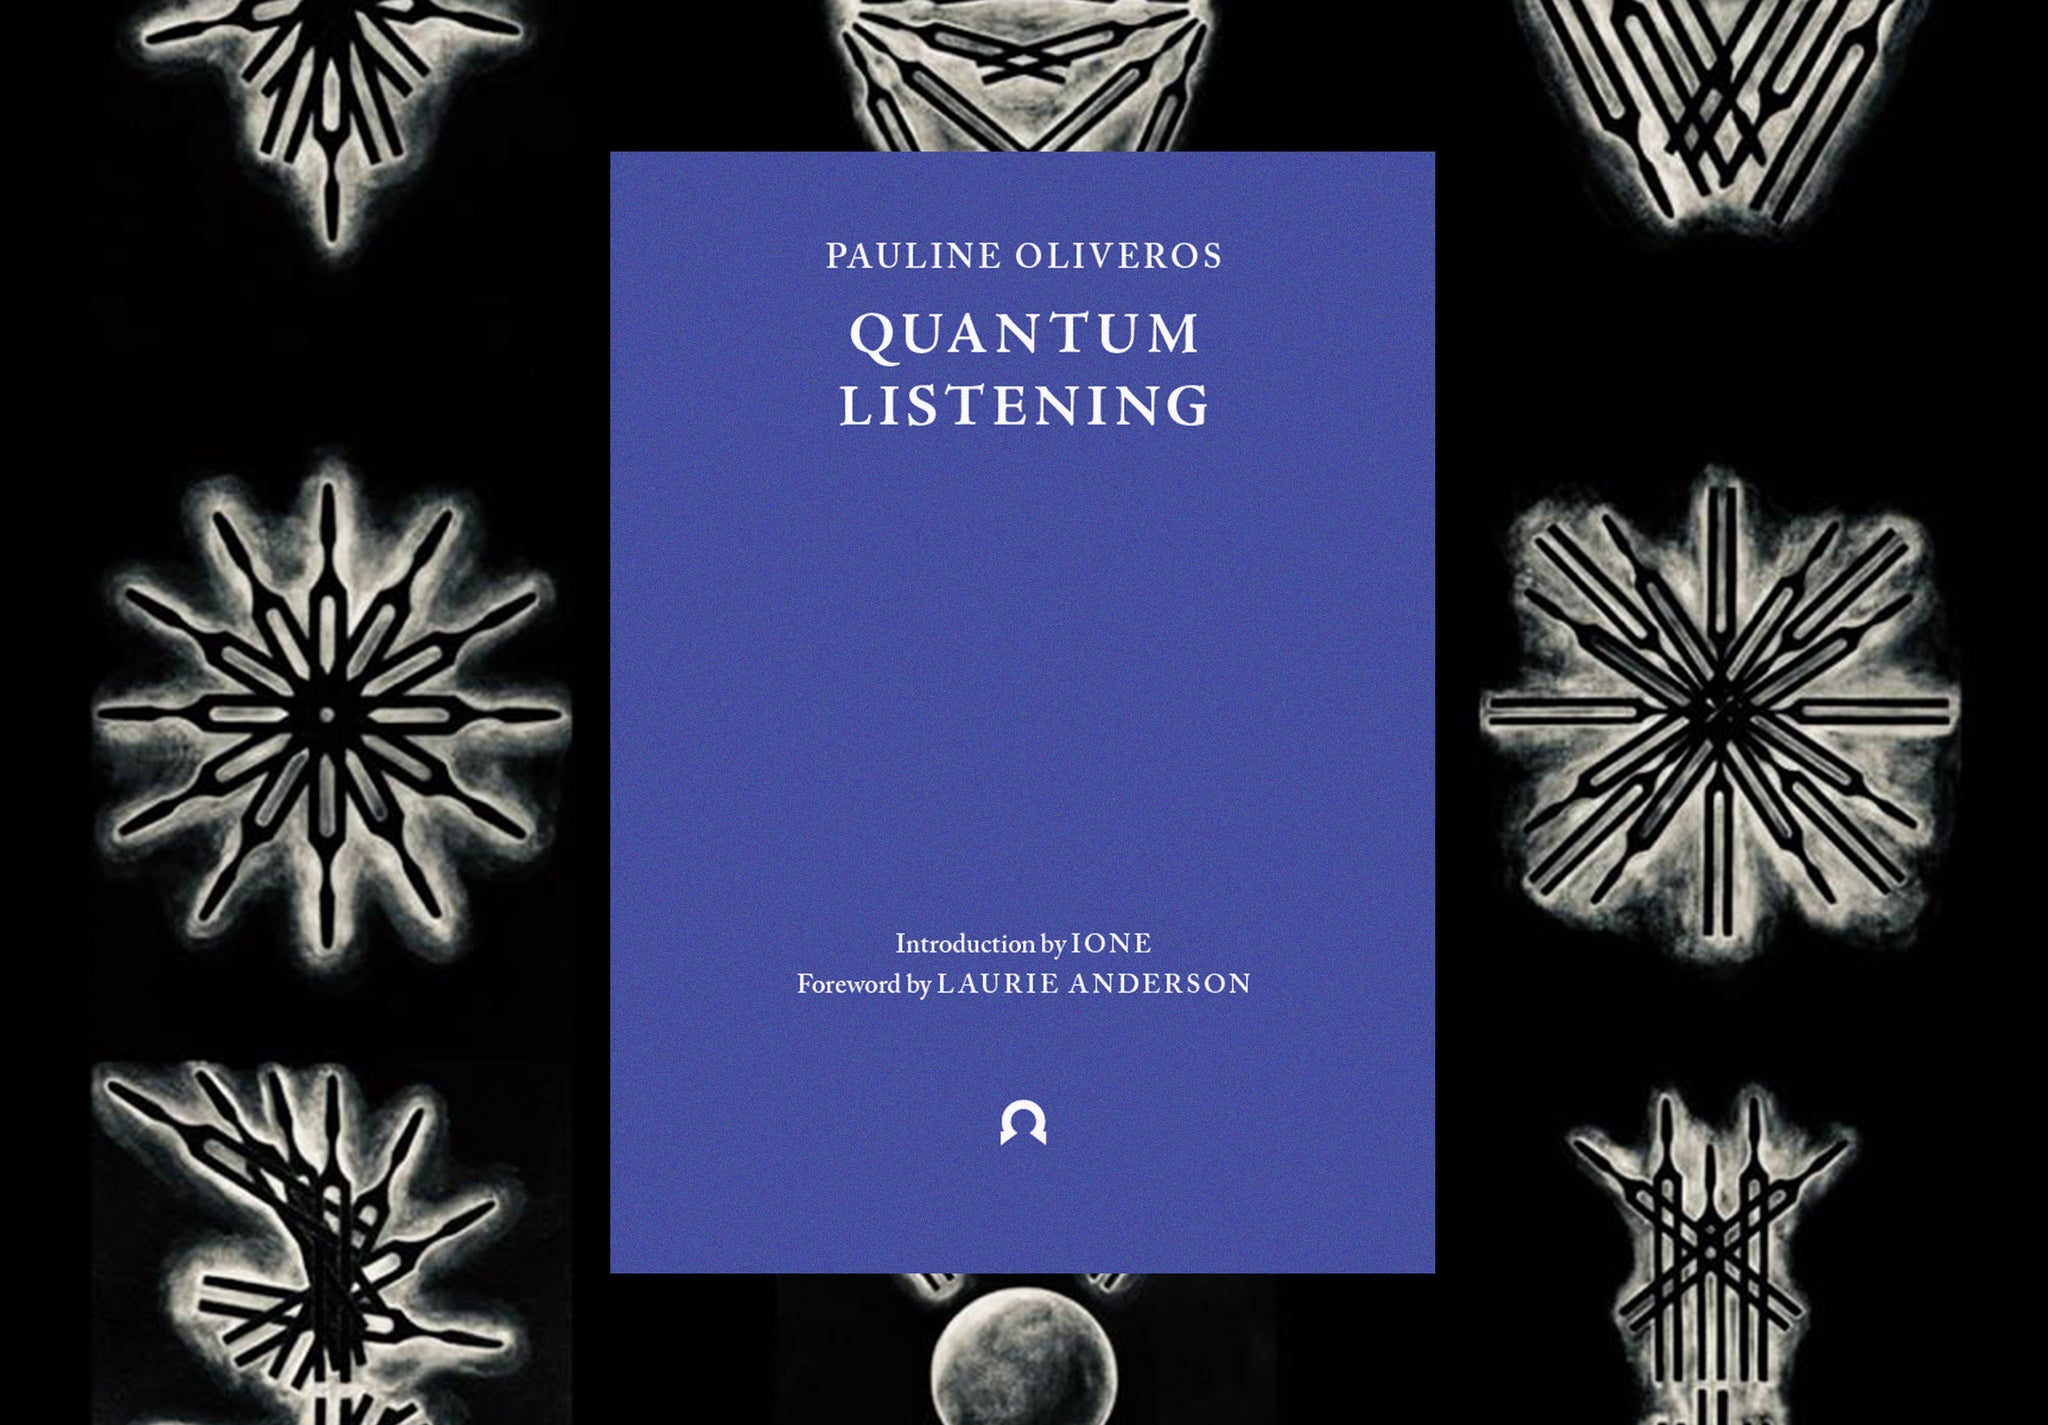 Quantum Listening Event: Pauline Oliveros at 90